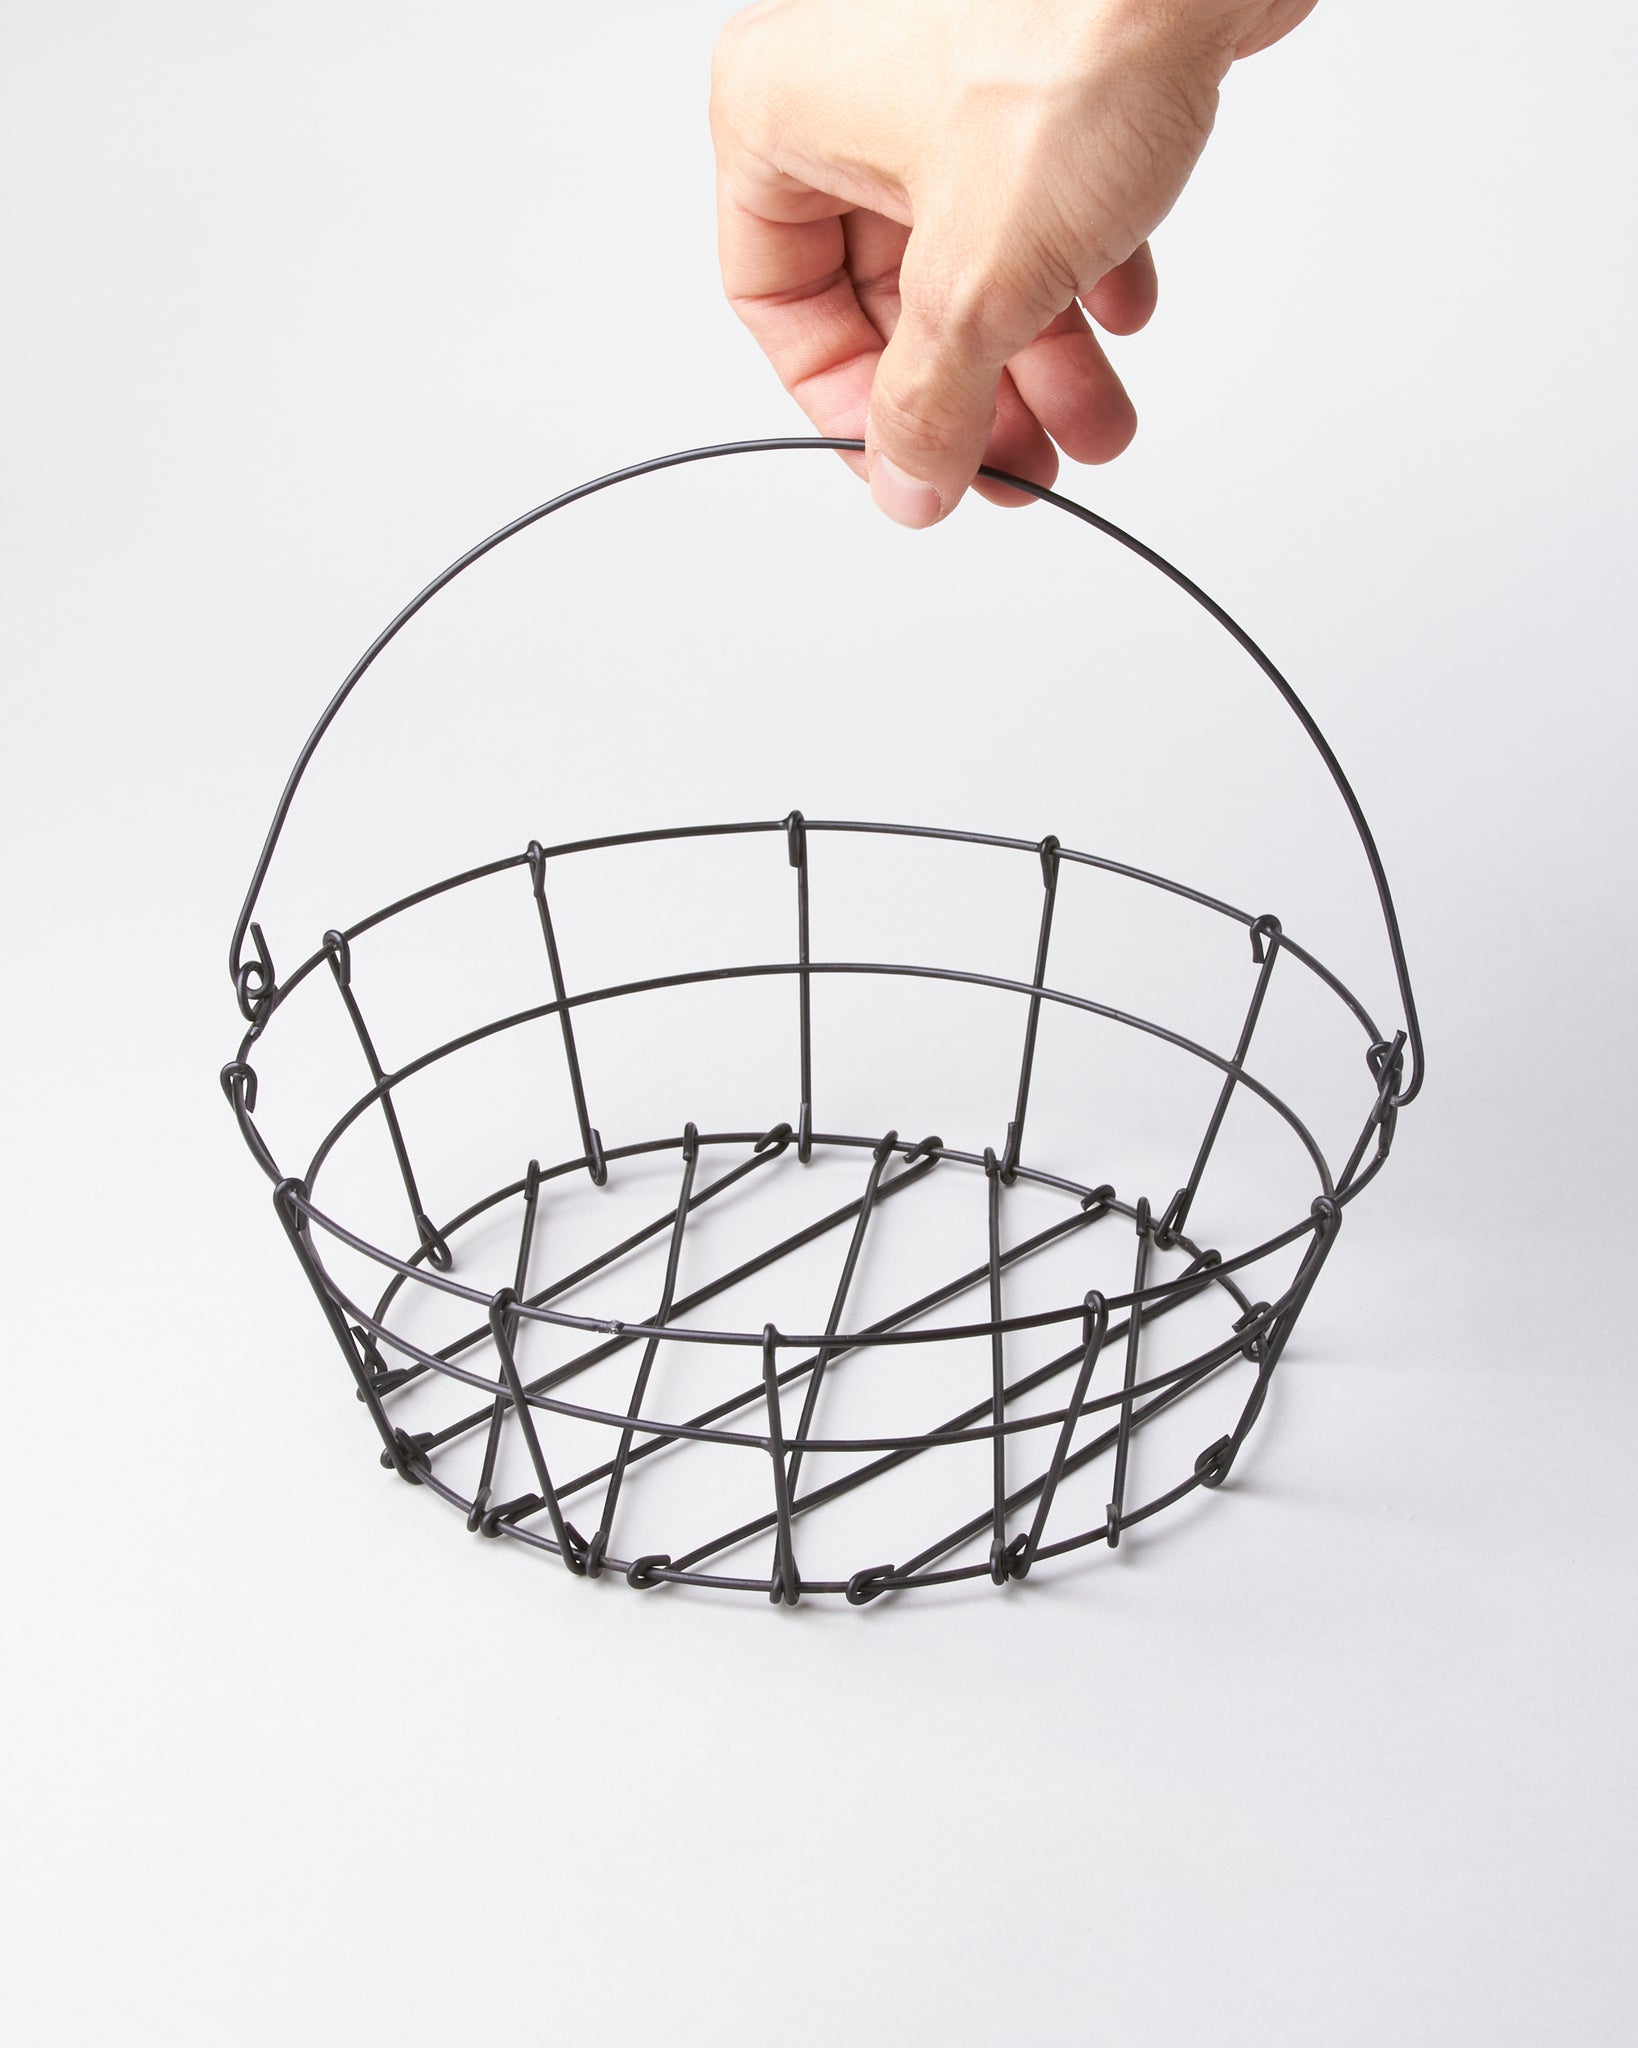 Round Basket